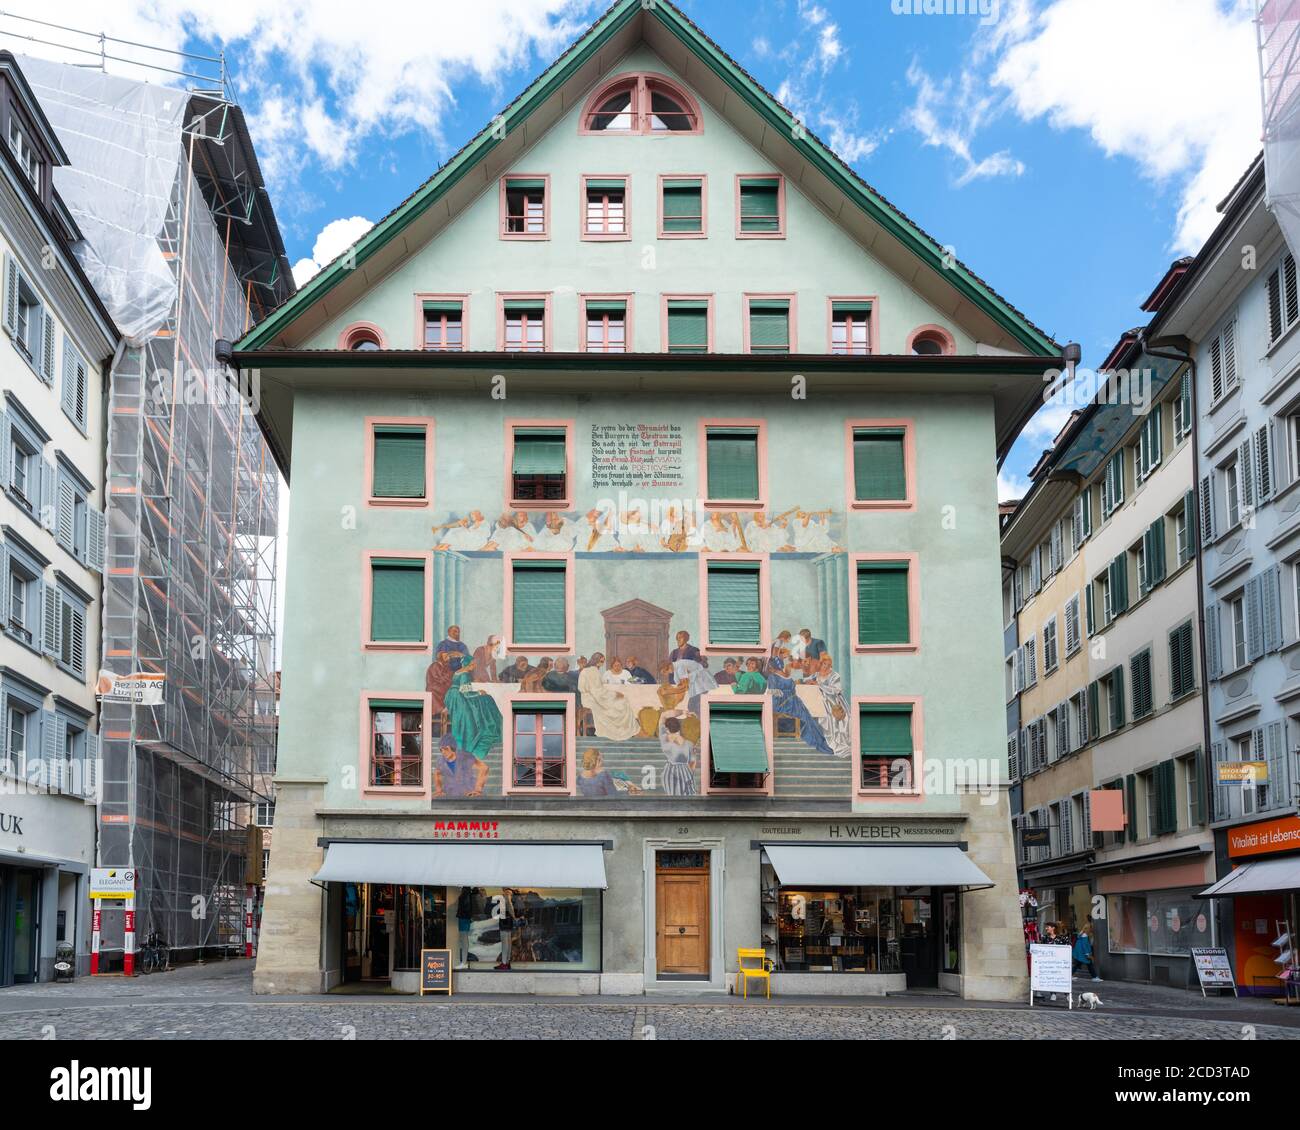 Lucerne Suisse , 29 juin 2020 : façade d'une ancienne maison peinte et colorée sur la place Weinmarkt dans la vieille ville de Lucerne Suisse Banque D'Images